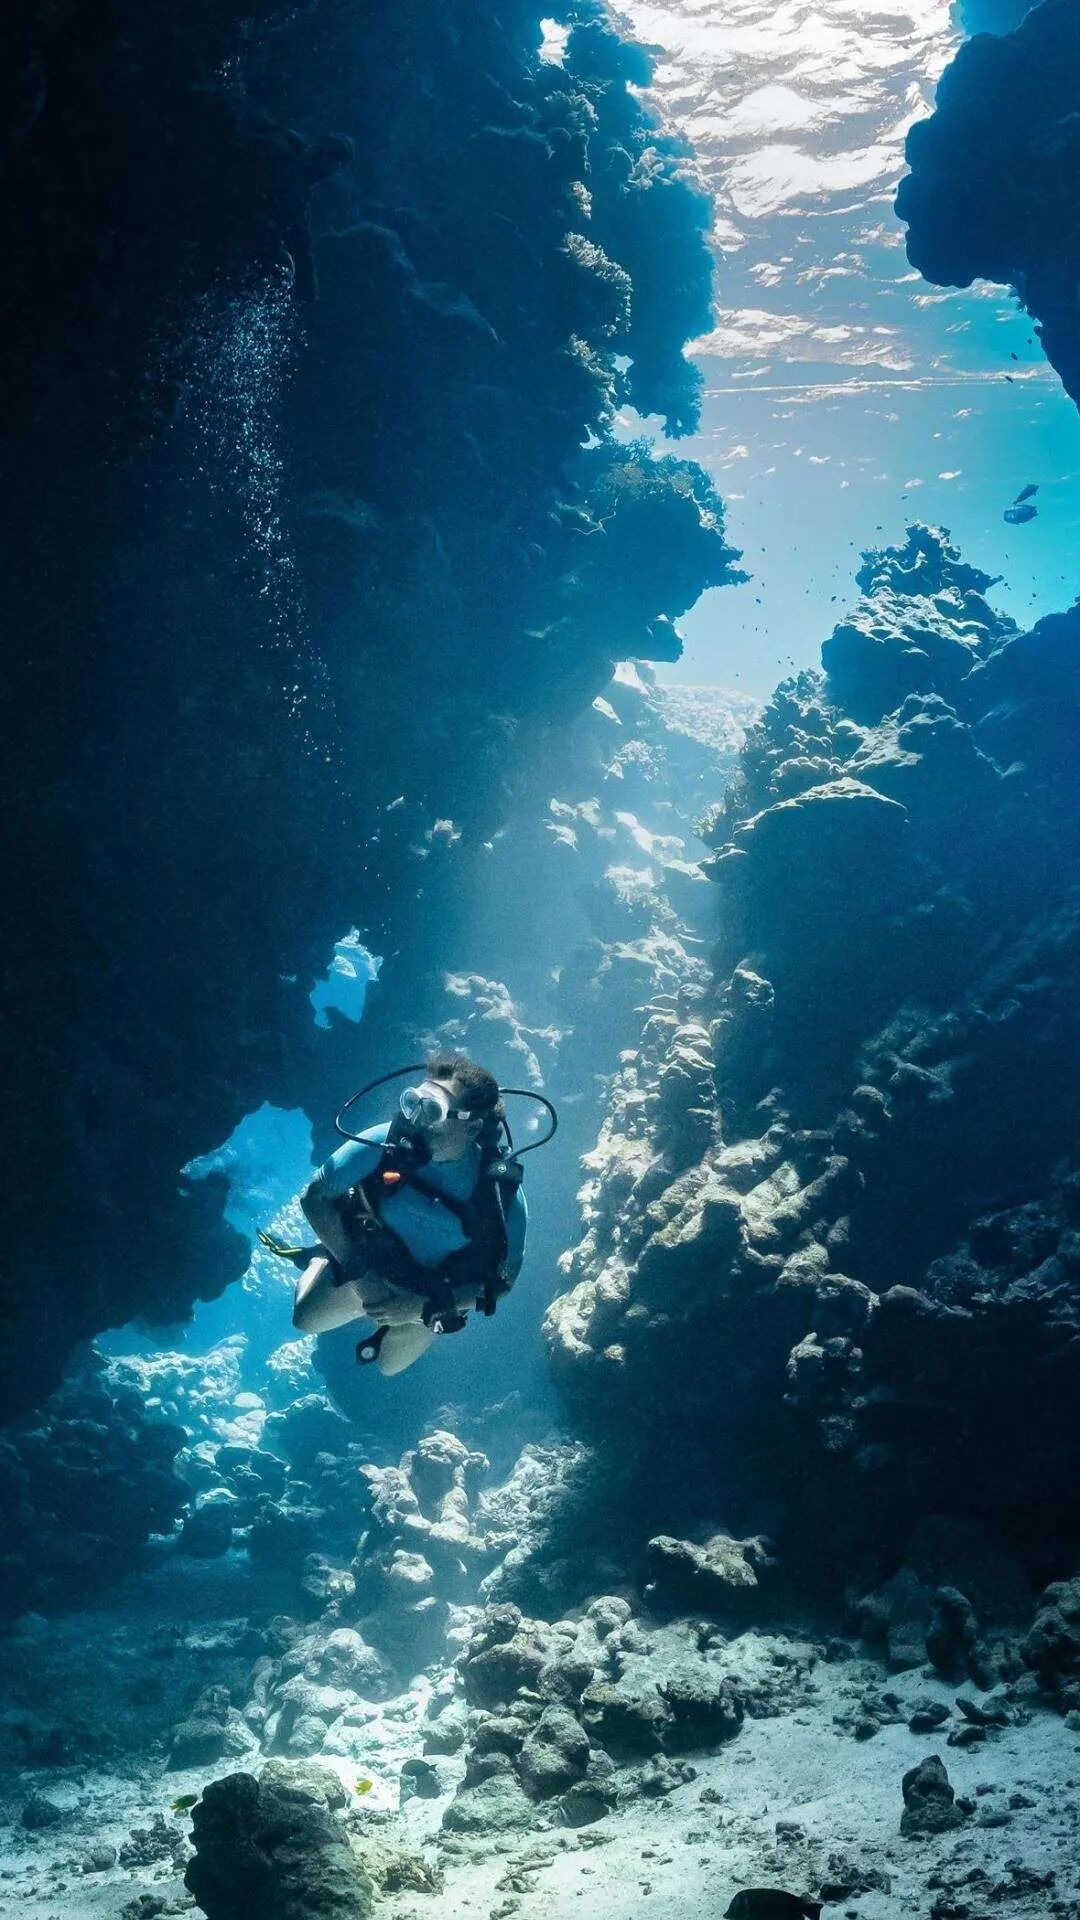 海底，一个潜泳的欧美女性，透过湖面的光，唯美水下摄影手机壁纸